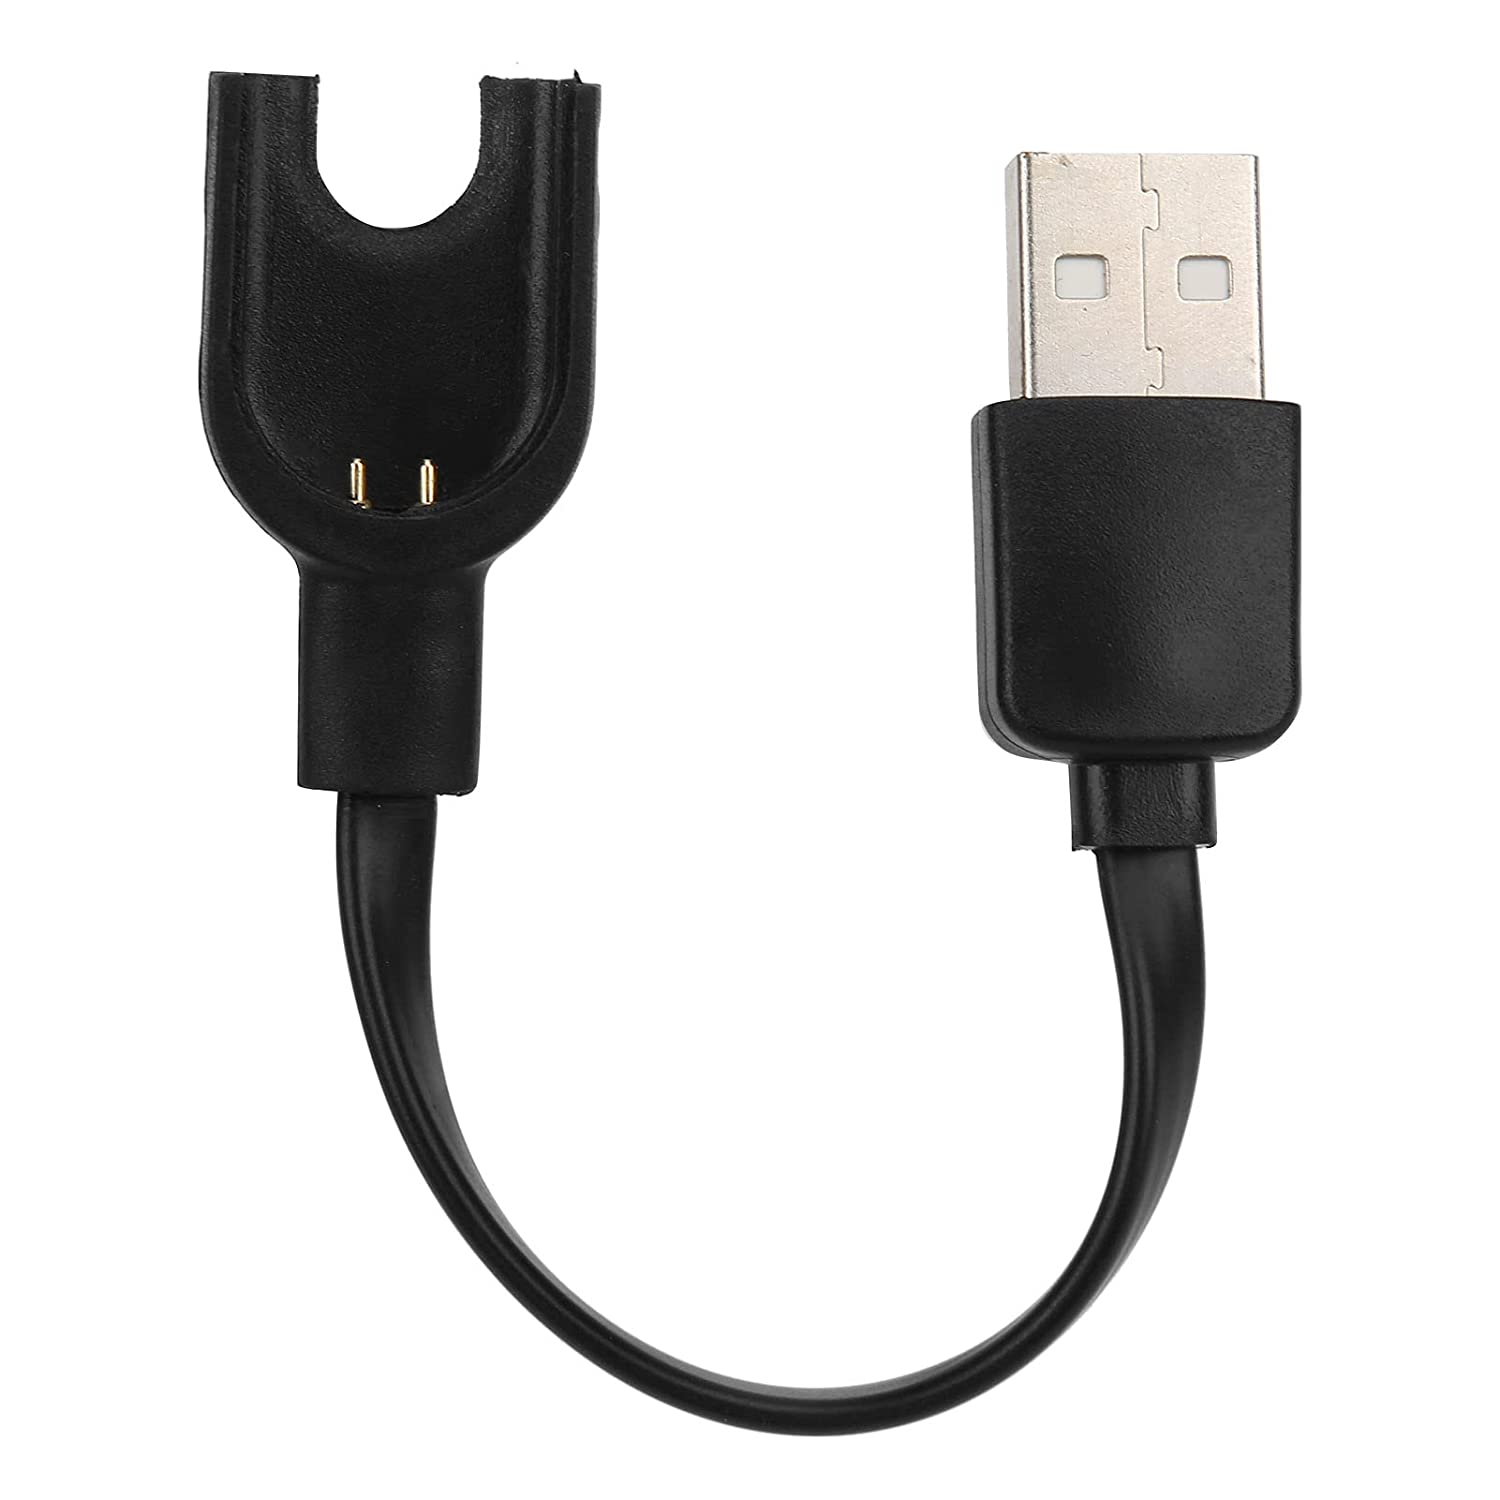 Cable USB carga y sincronización | Compatible con Xiaomi Mi Band 3 | Cargador Xiaomi Mi Band 3 | Cable reemplazo Xiaomi Mi band 3 | Longitud 15 cm | Negro